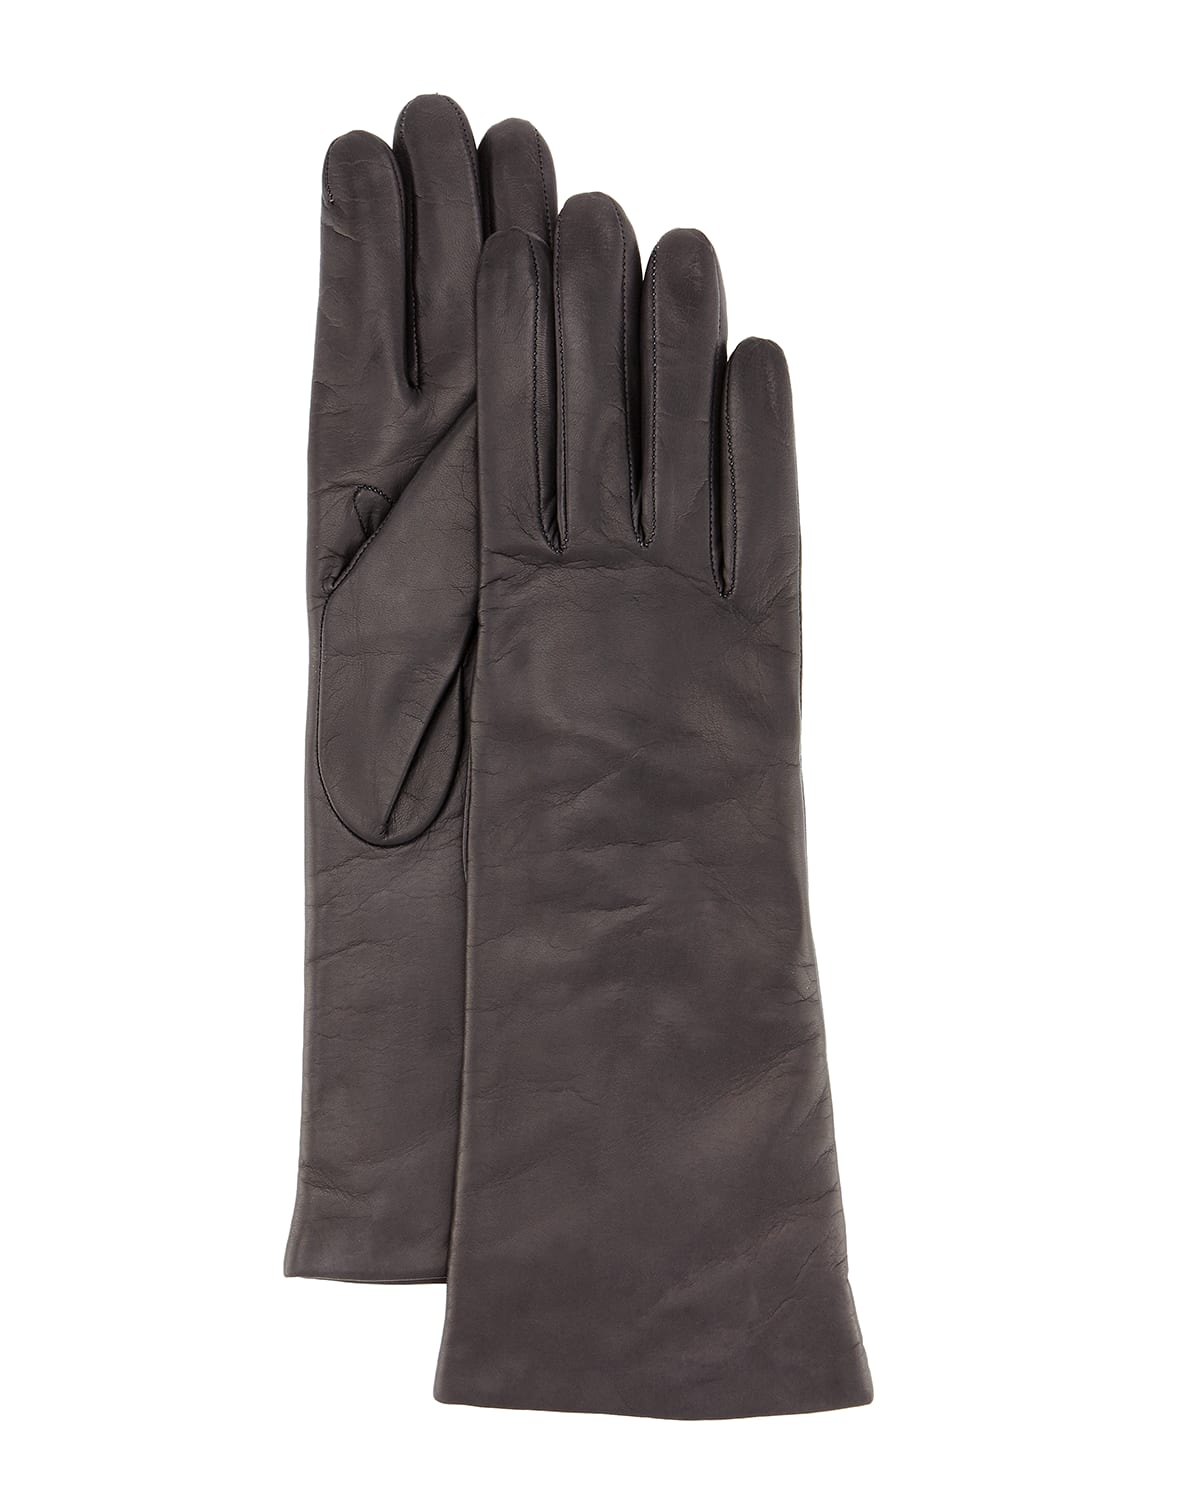 Napa Leather Gloves, Orange